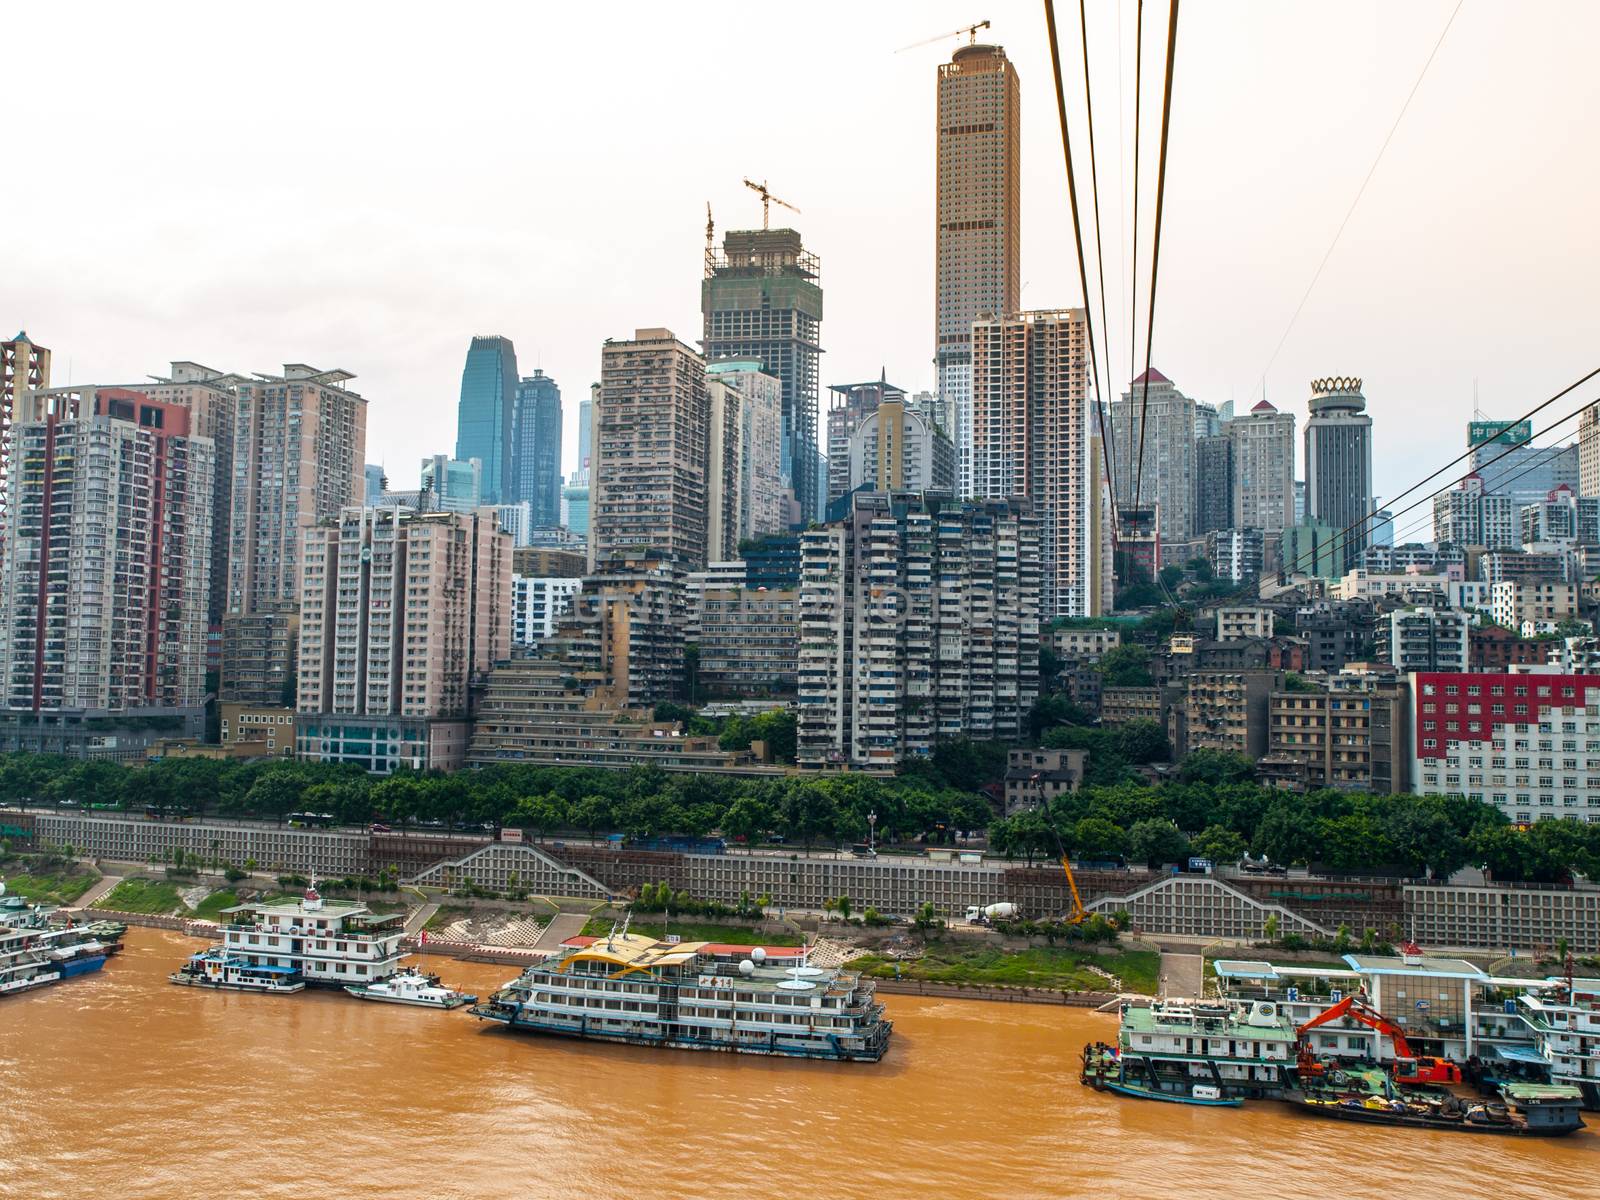 Yangtze river in Chongqing by pyty